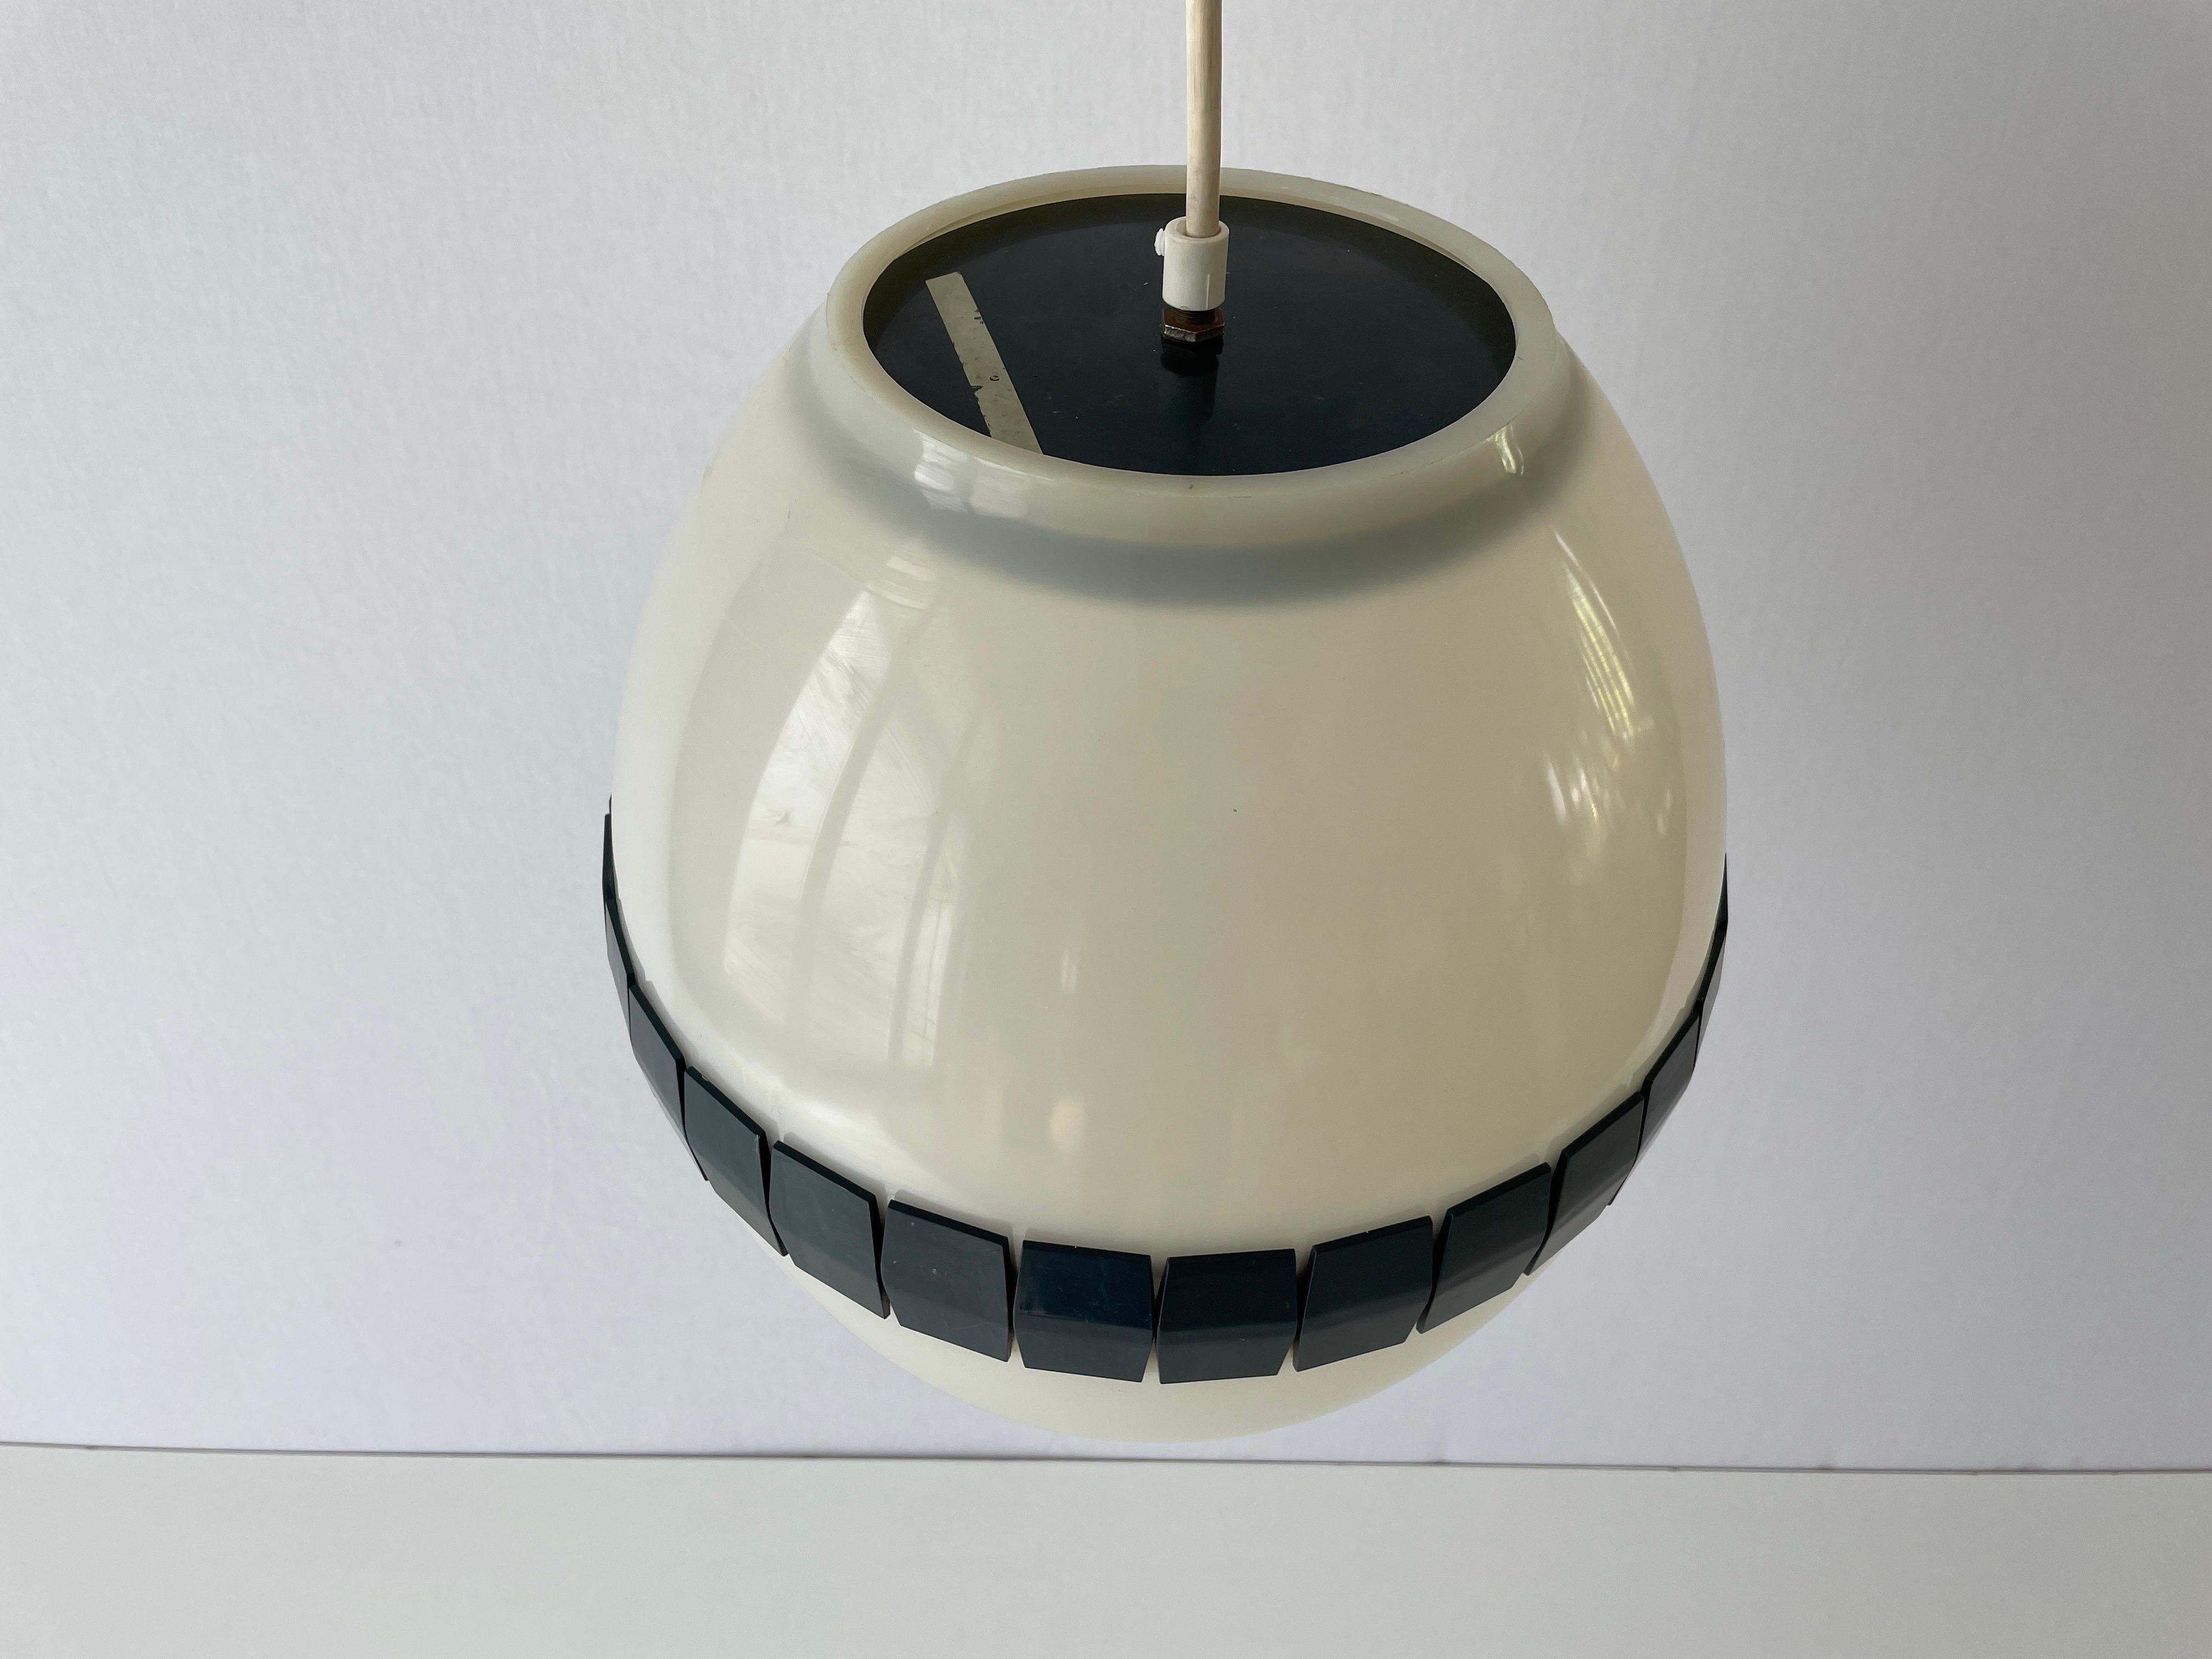 Hübsche italienische eiförmige Kunststoff-Deckenleuchte, 1960er Jahre, Italien

Diese Lampe funktioniert mit einer E27-Glühbirne.
Verdrahtet und geeignet für die Verwendung mit 110V-220V in allen Ländern.

Bitte zögern Sie nicht, uns bei Fragen